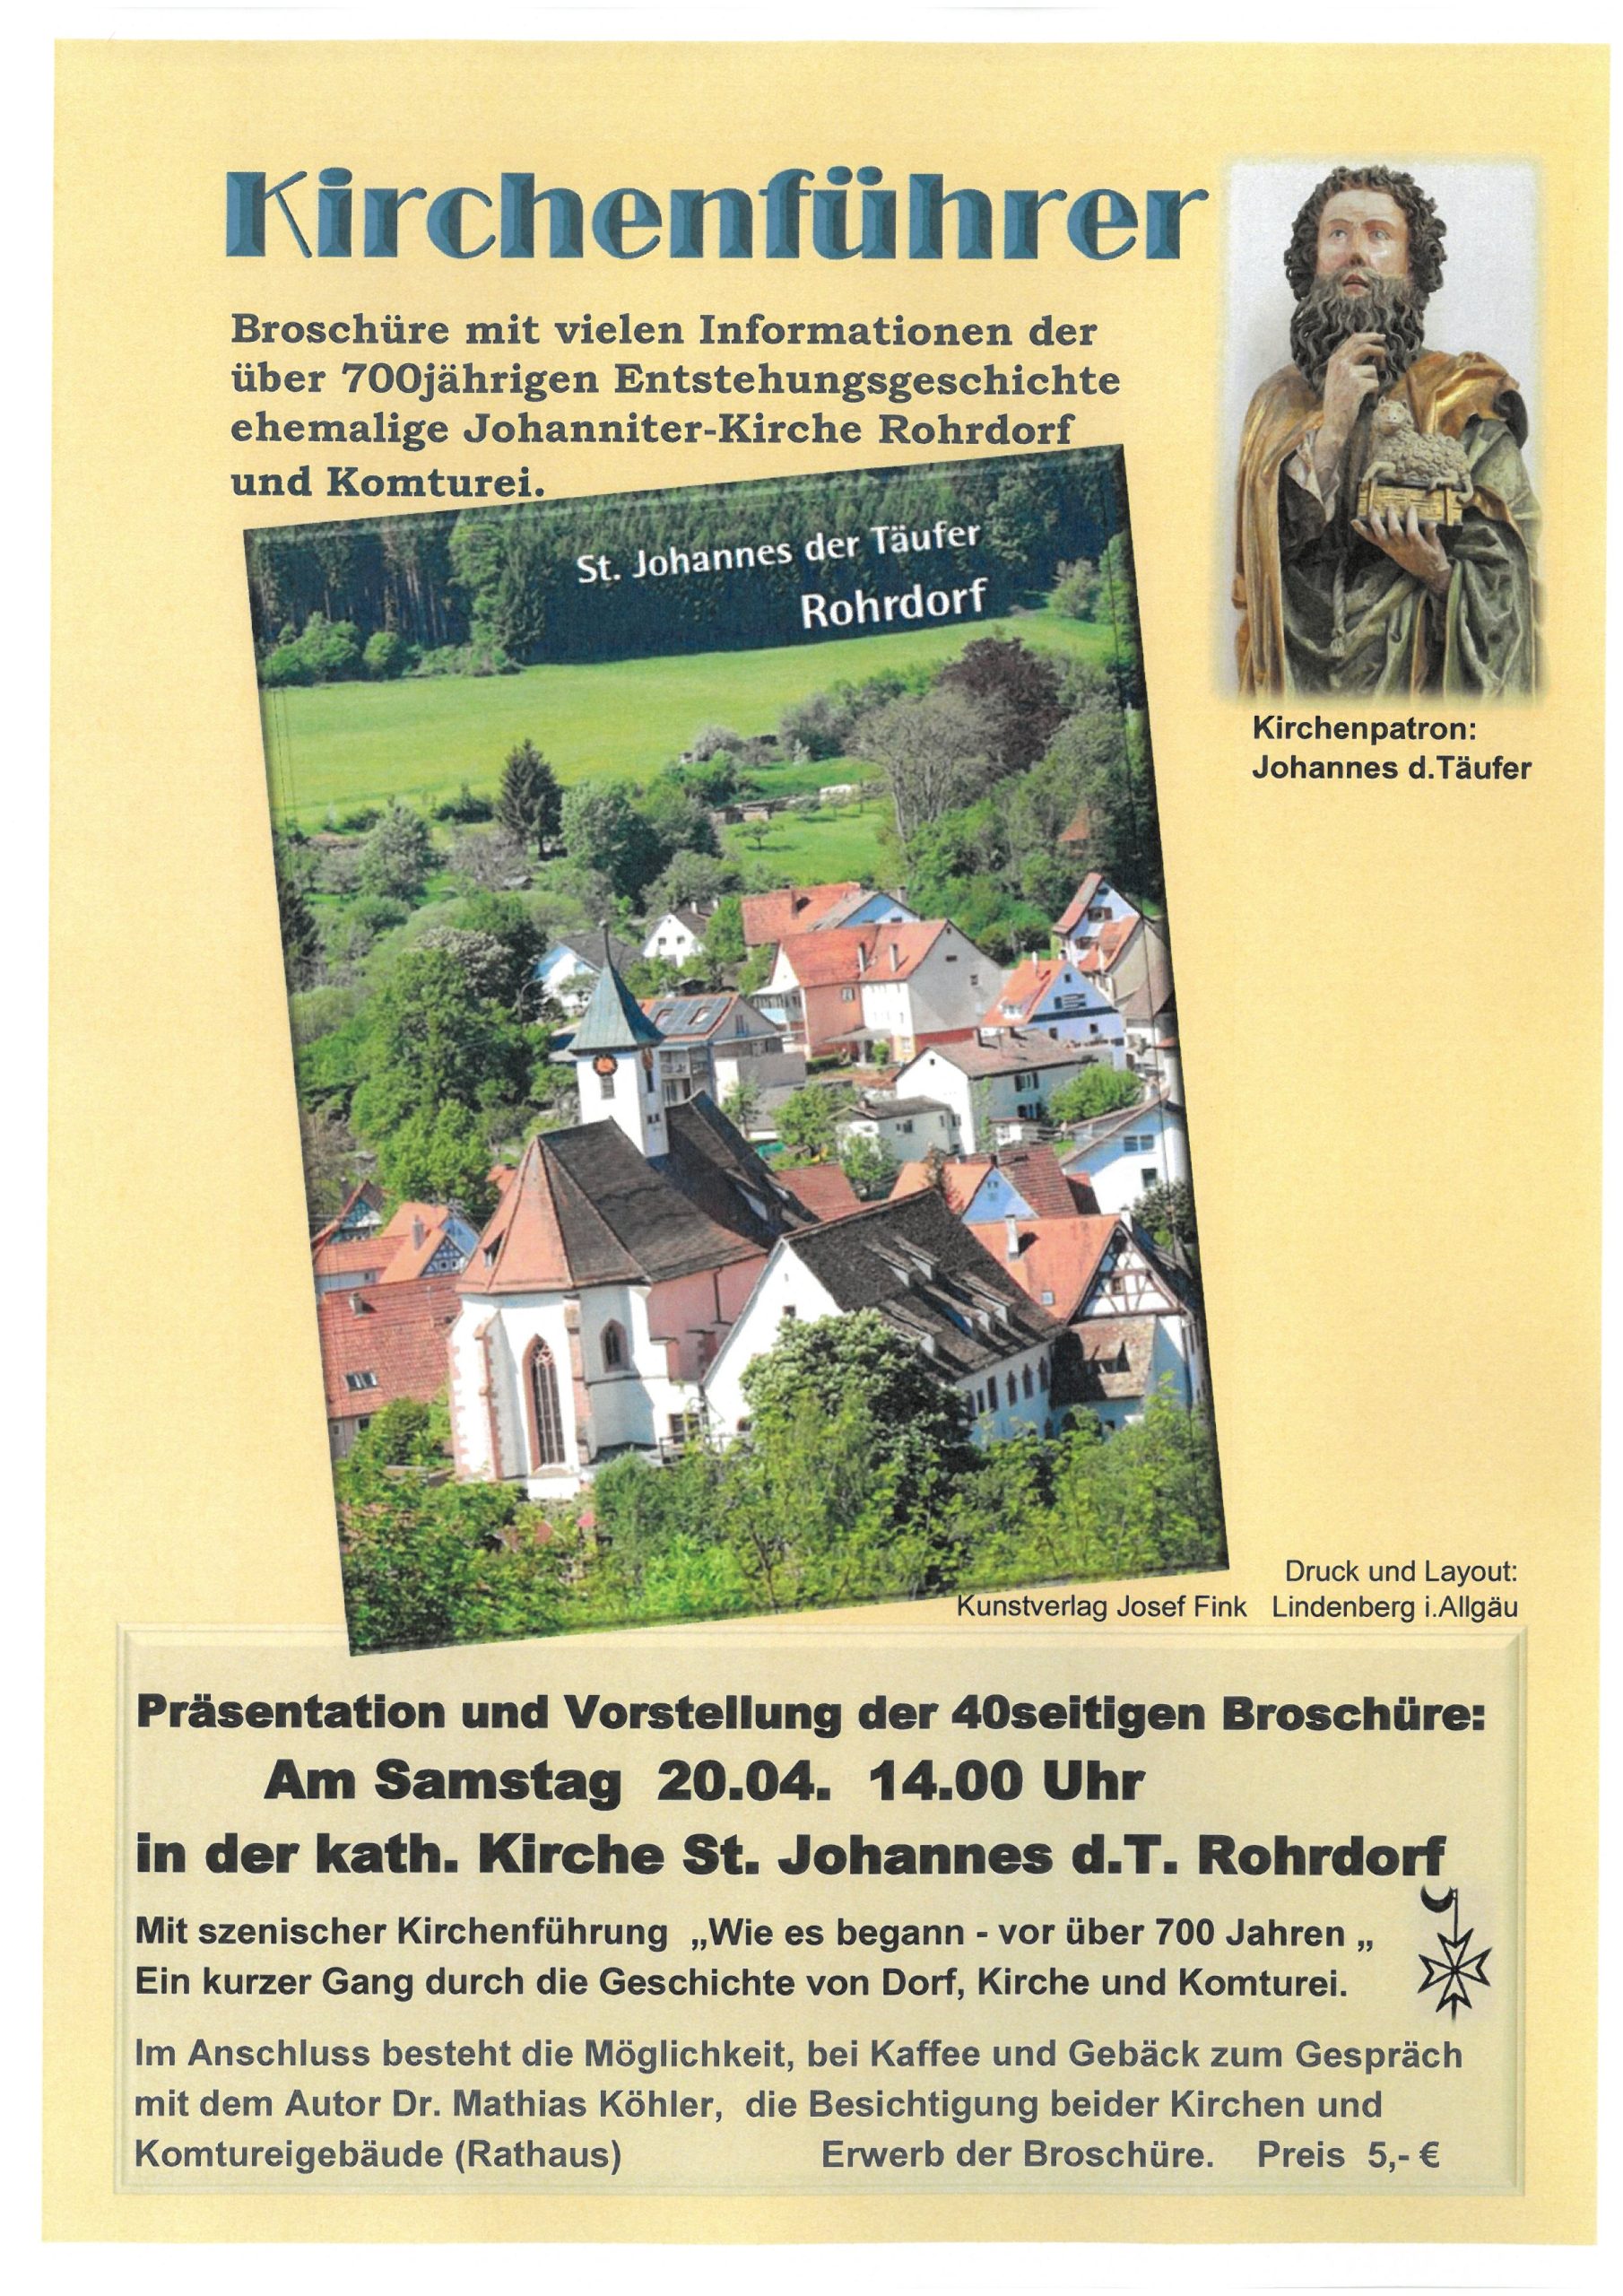 Kirchenführer – Präsentation und Vorstellung am Samstag, 20.04. um 14:00 Uhr in der kath. Kirche St. Johannes d.T. in Rohrdorf